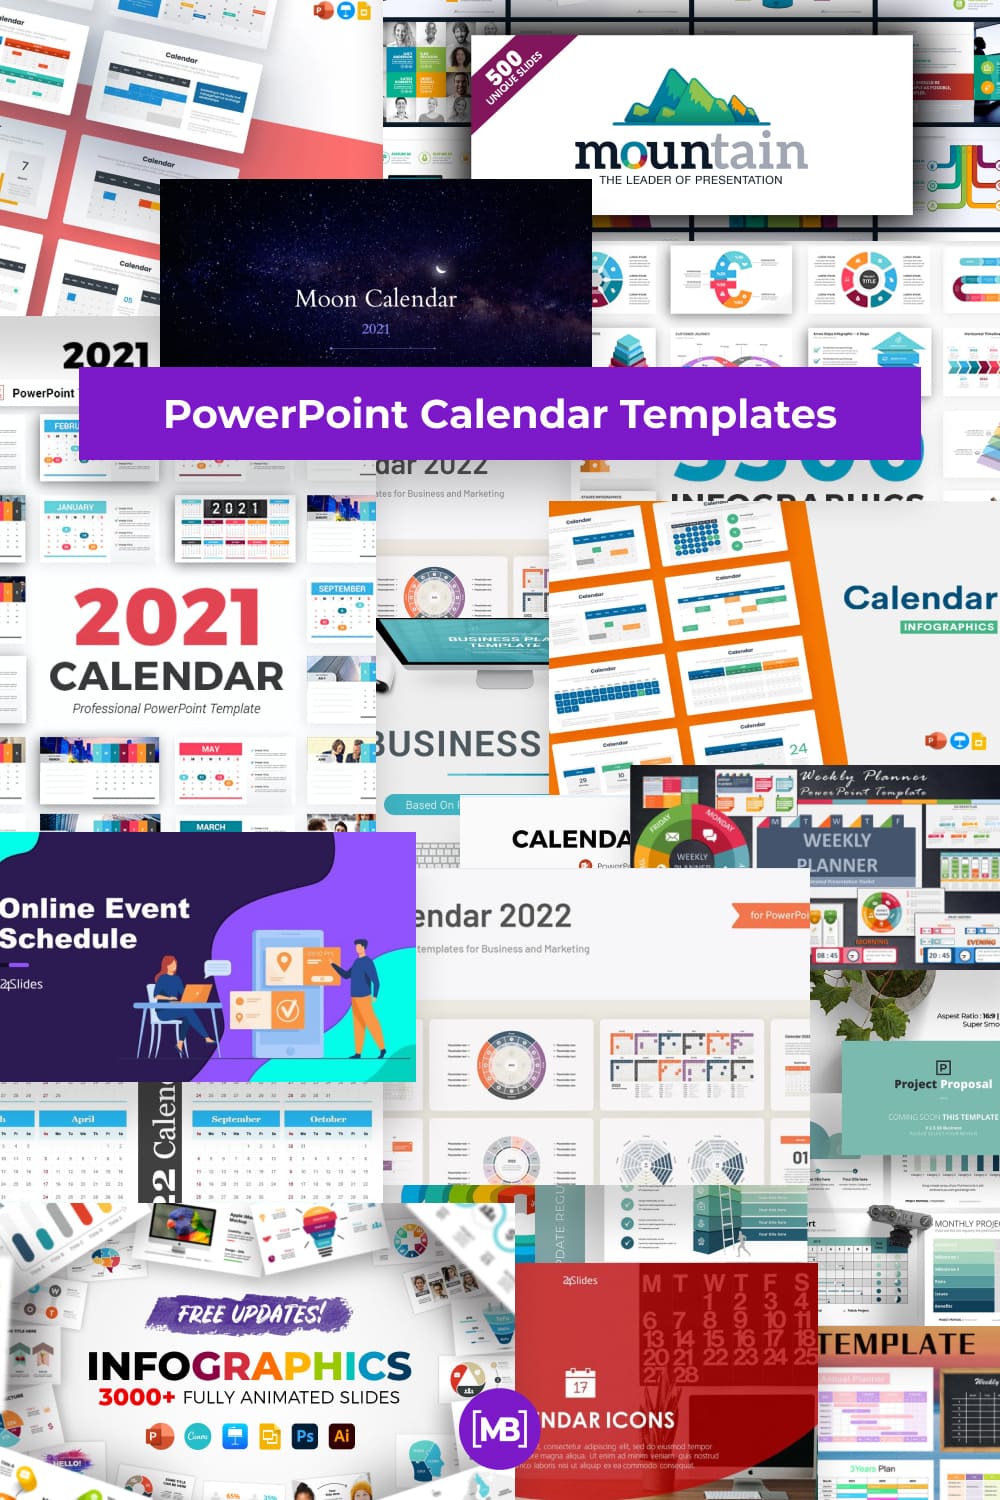 PowerPoint Calendar Templates - Pinterest.